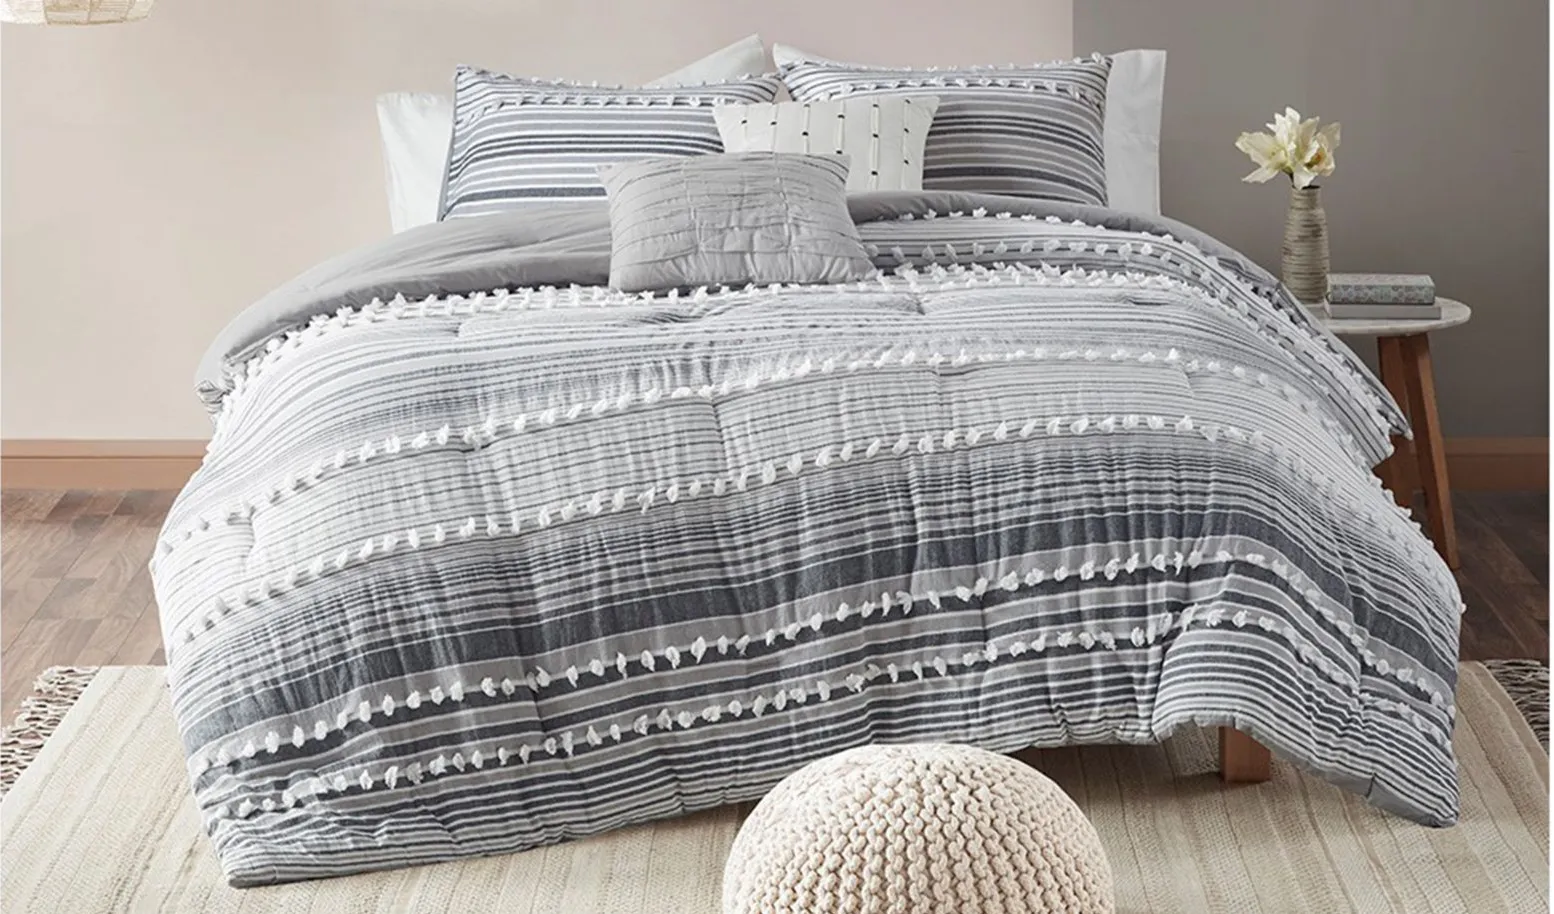 Calum 4-pc. Comforter Set in Gray by E&E Co Ltd